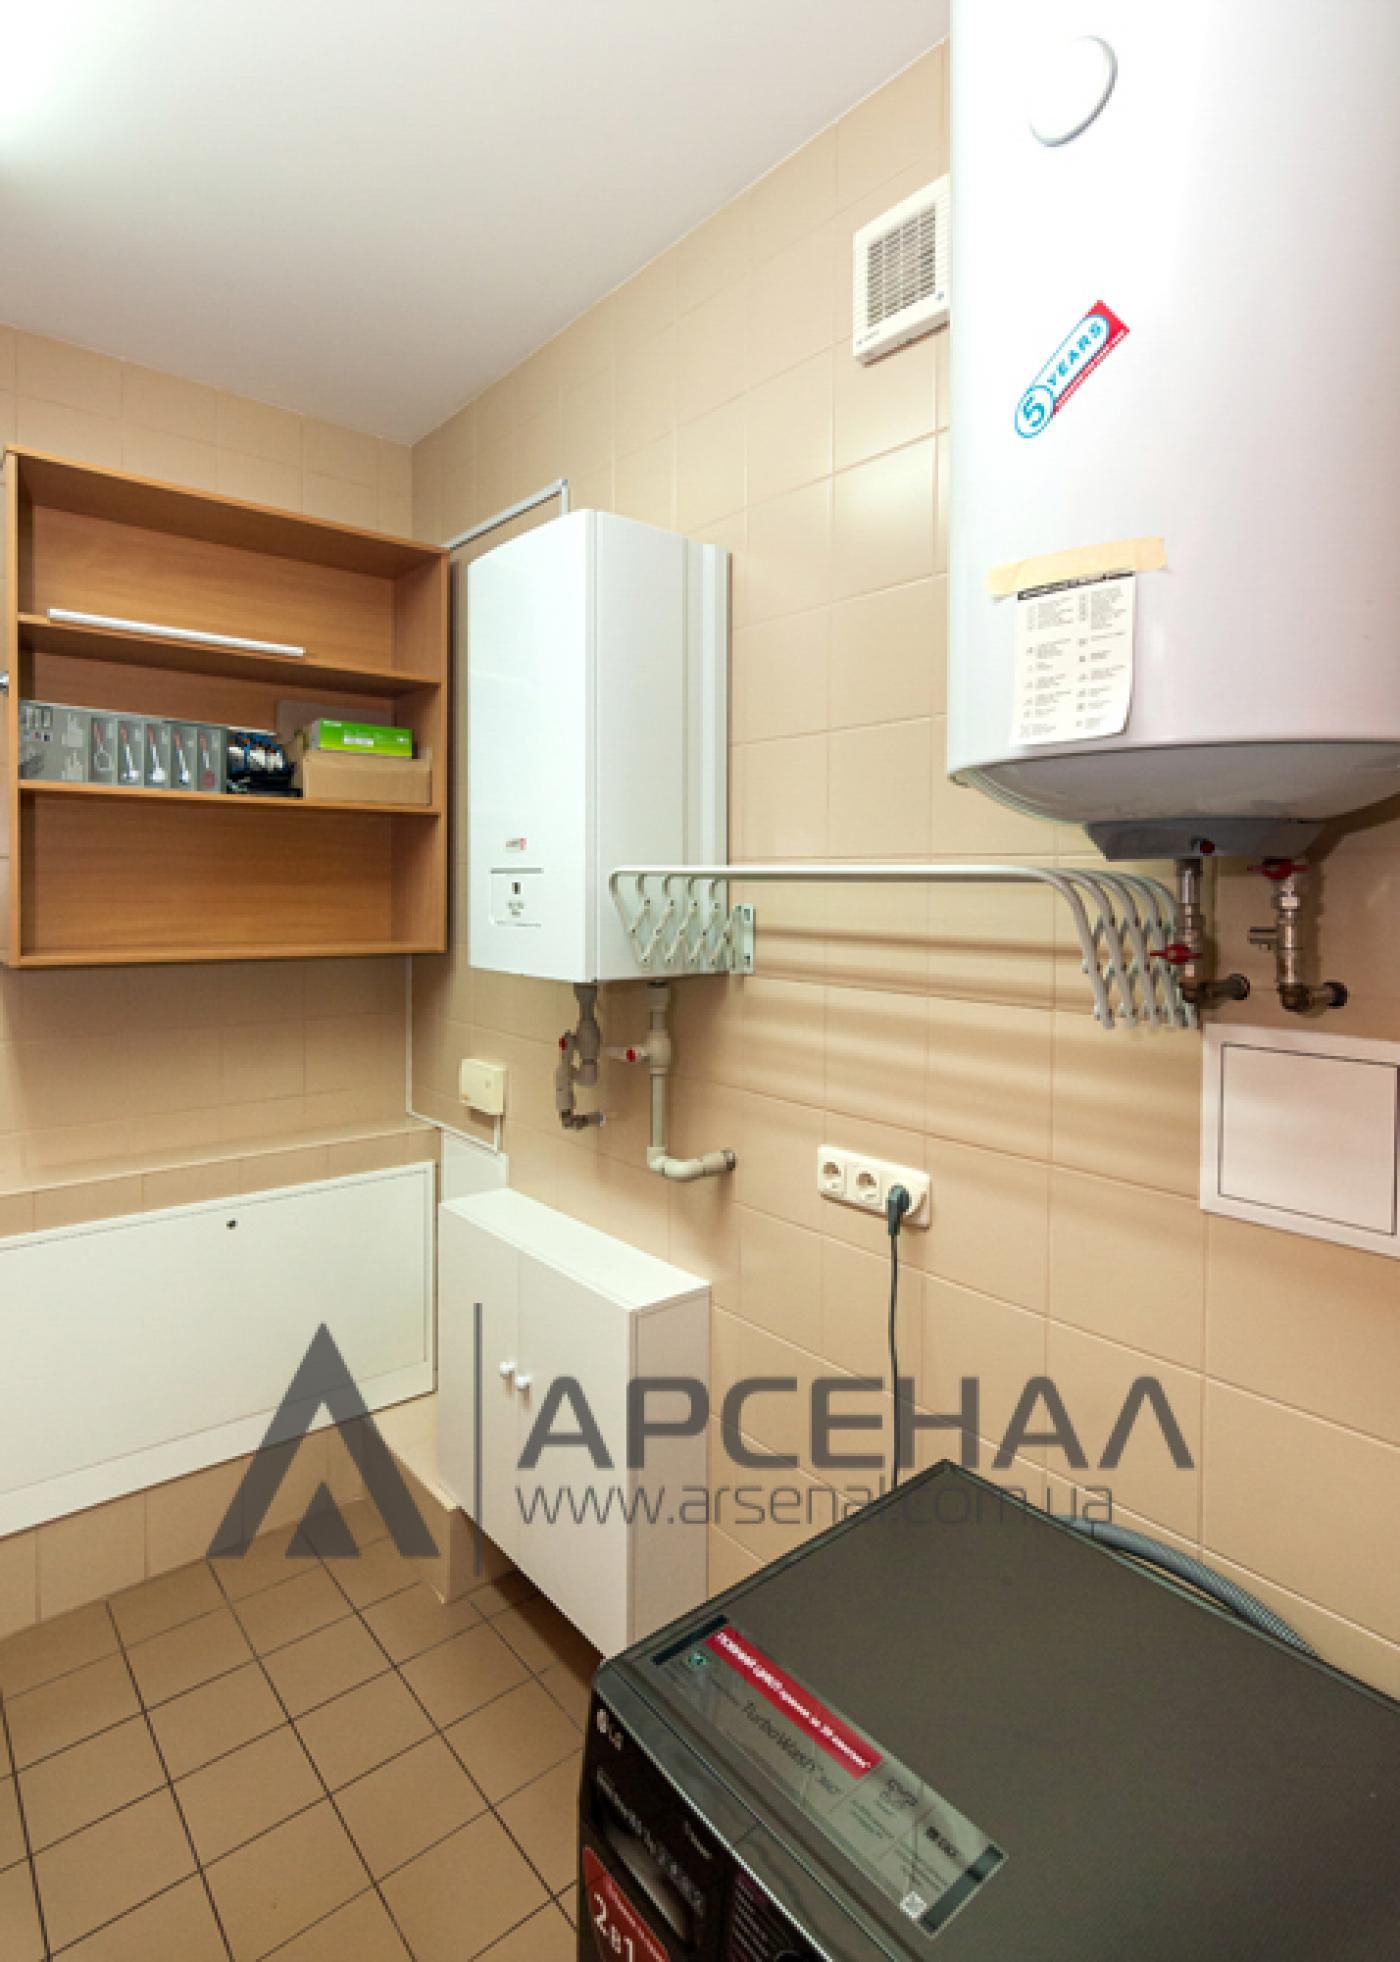 Продаж або обмін на квартиру/будинок в місті або в придмісті Київа